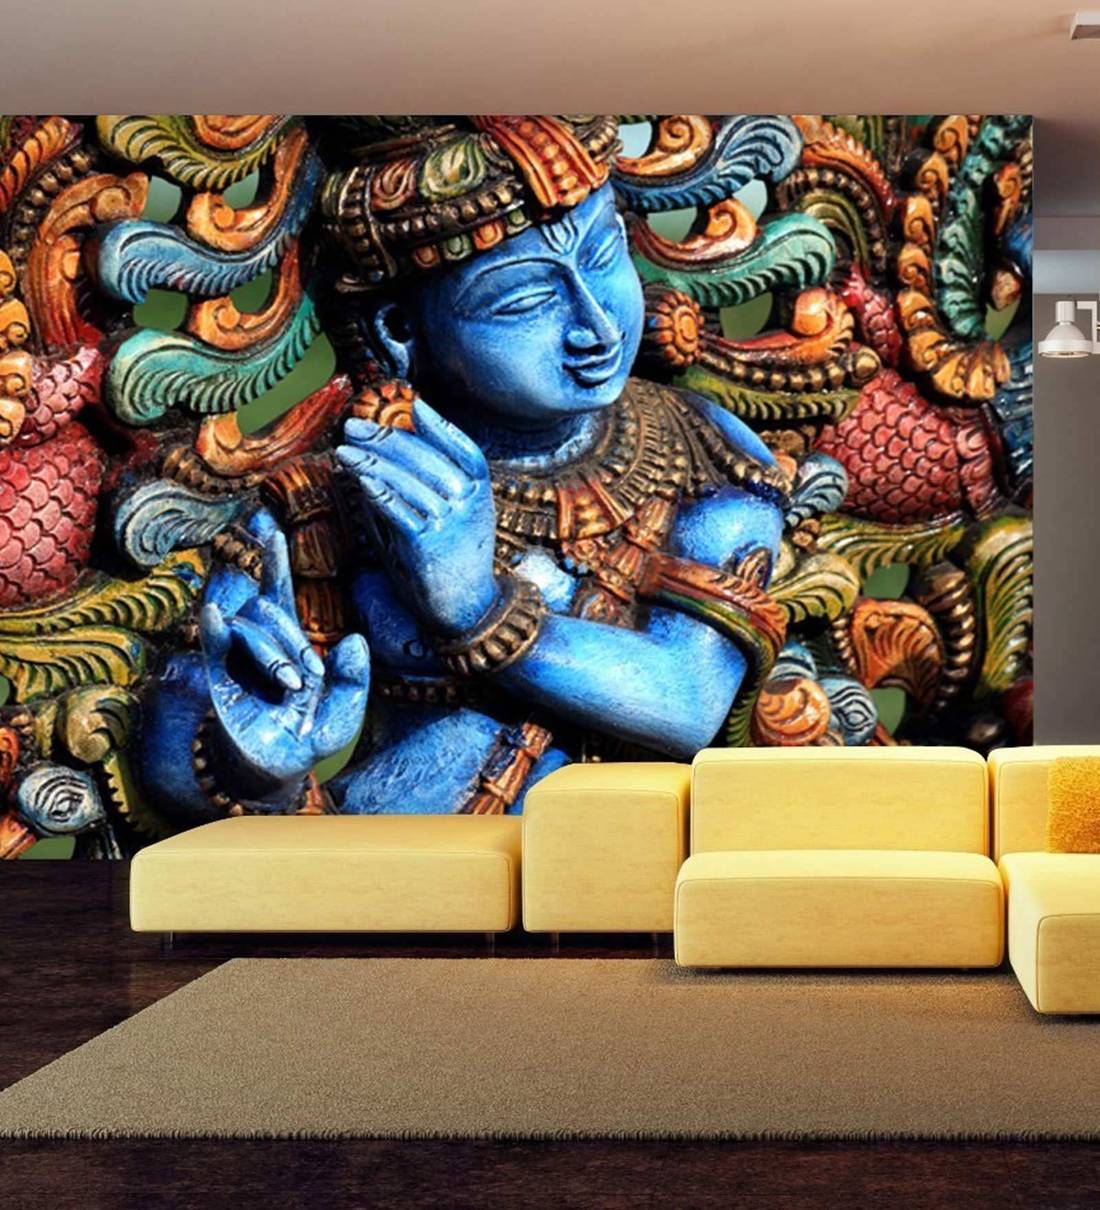 1100x1210 Mua Hình nền bức tranh tường 3D Chúa Krishna bằng giấy màu xanh không len của 999Store Trực tuyến - Hình nền 3D - Nội thất - Trang trí nội thất